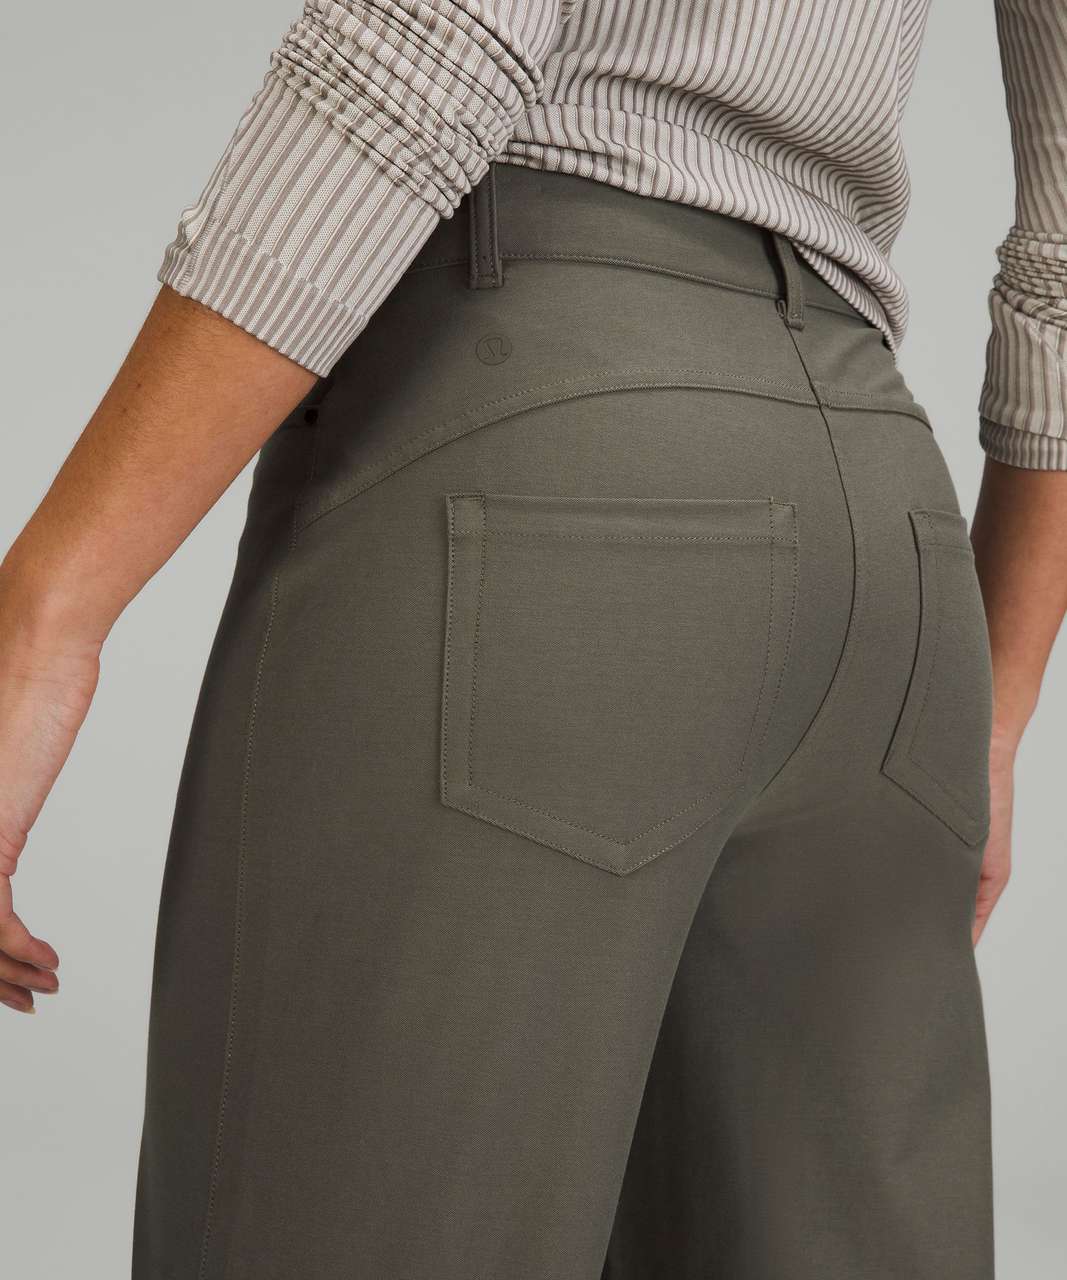 Lululemon athletica City Sleek 5 Pocket High-Rise Wide-Leg Pant Full Length  *Light Utilitech, Women's Trousers